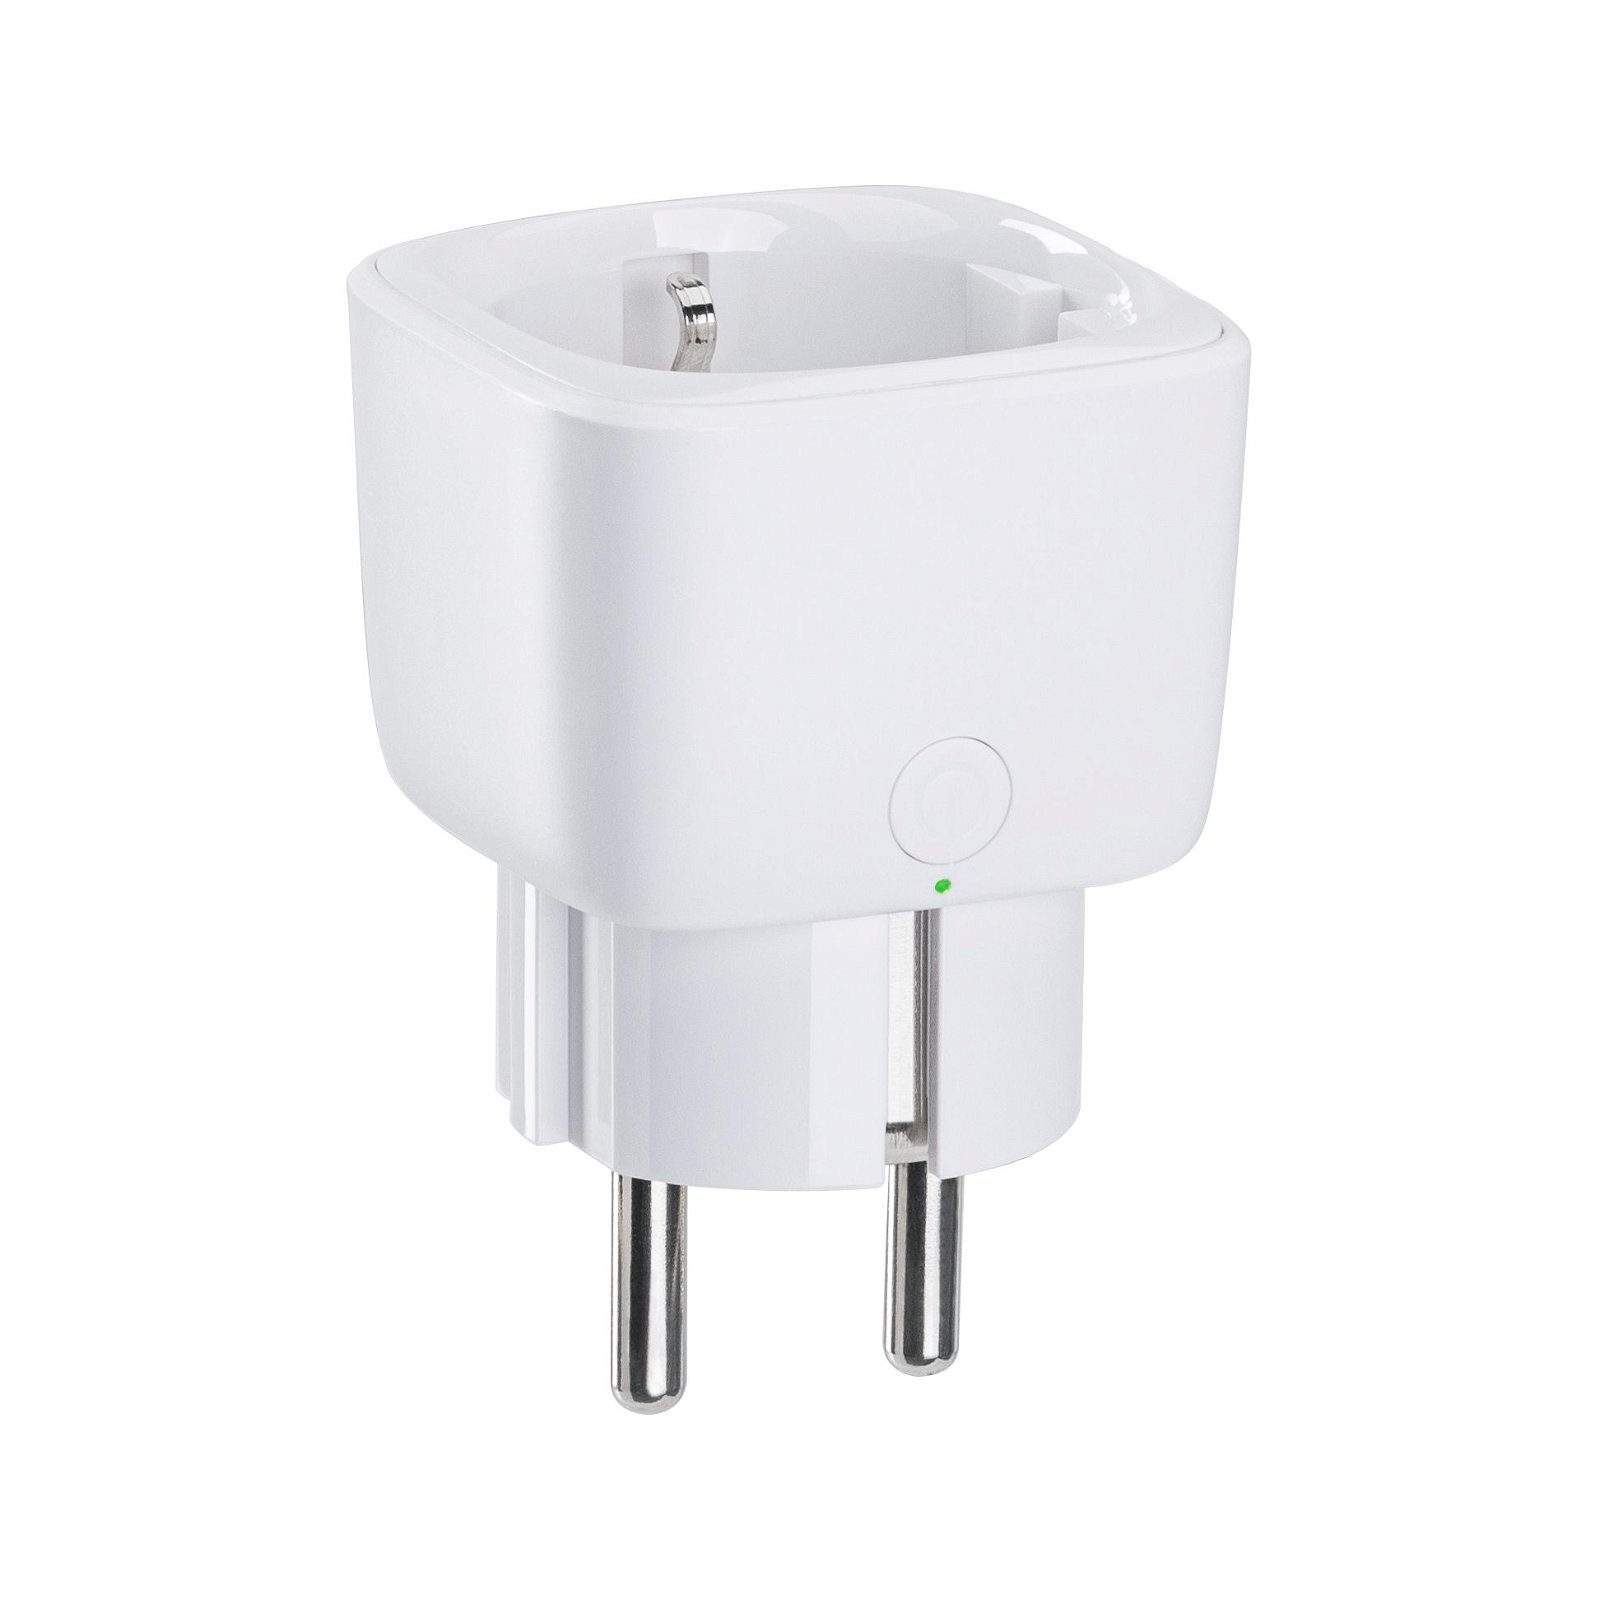 Plug adapter Smart Home Zigbee Smart Plug White